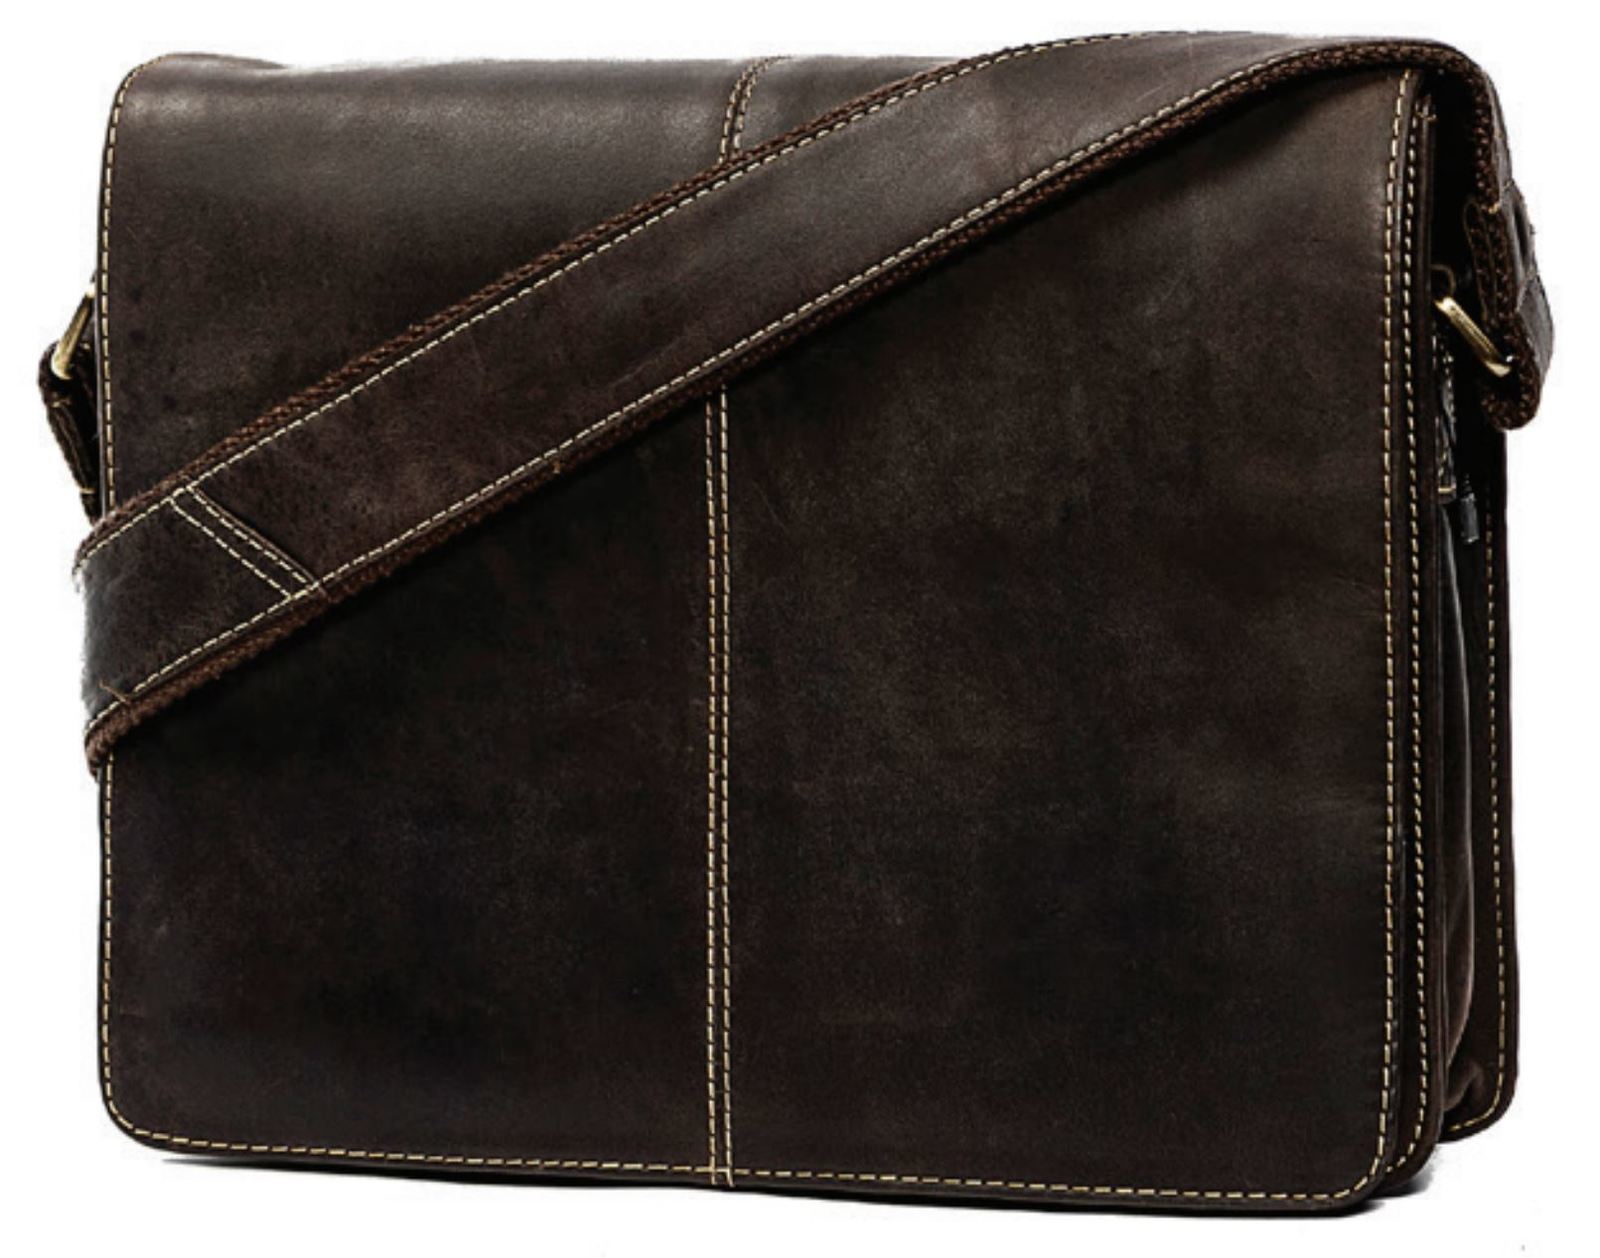 Leather satchel men messenger women handbag shoulder bag ipad | Etsy